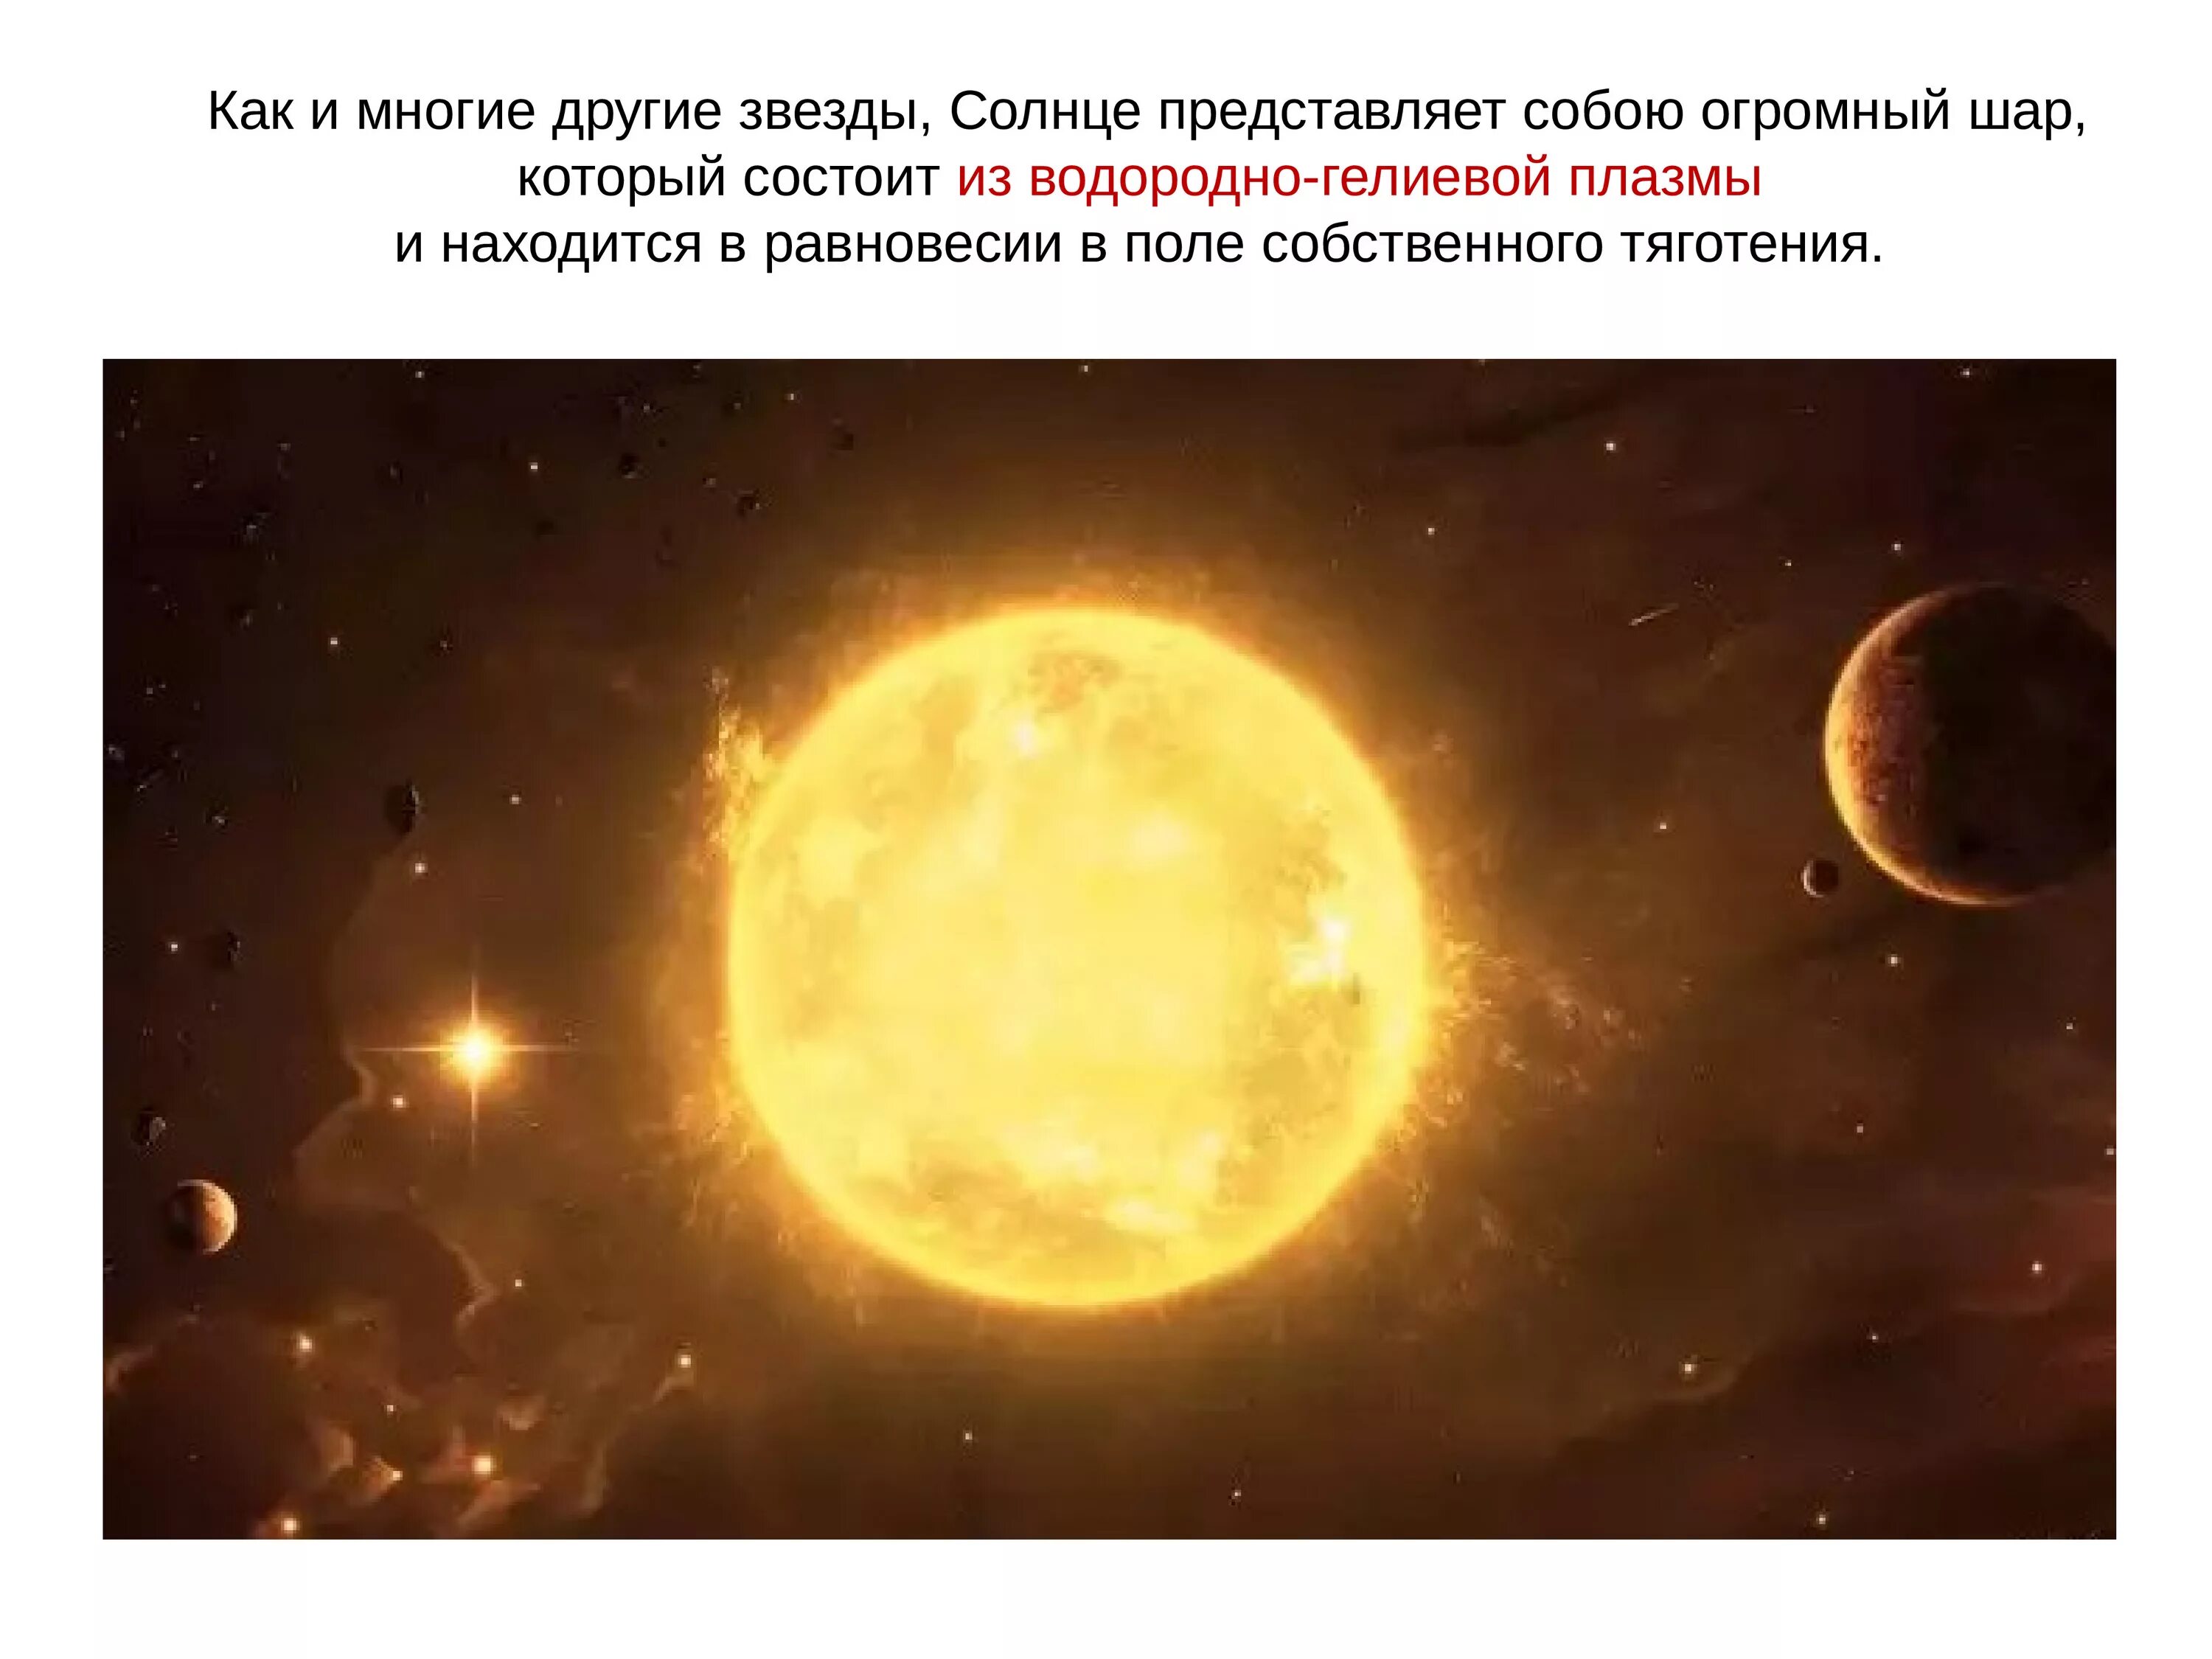 Солнце и звезды астрономия 11 класс. Солнце представляет собой огромный шар который состоит из. Солнце как звезда. Солнце и звезды презентация. Огромный шар, который состоит из водородно-гелиевой плазмы.